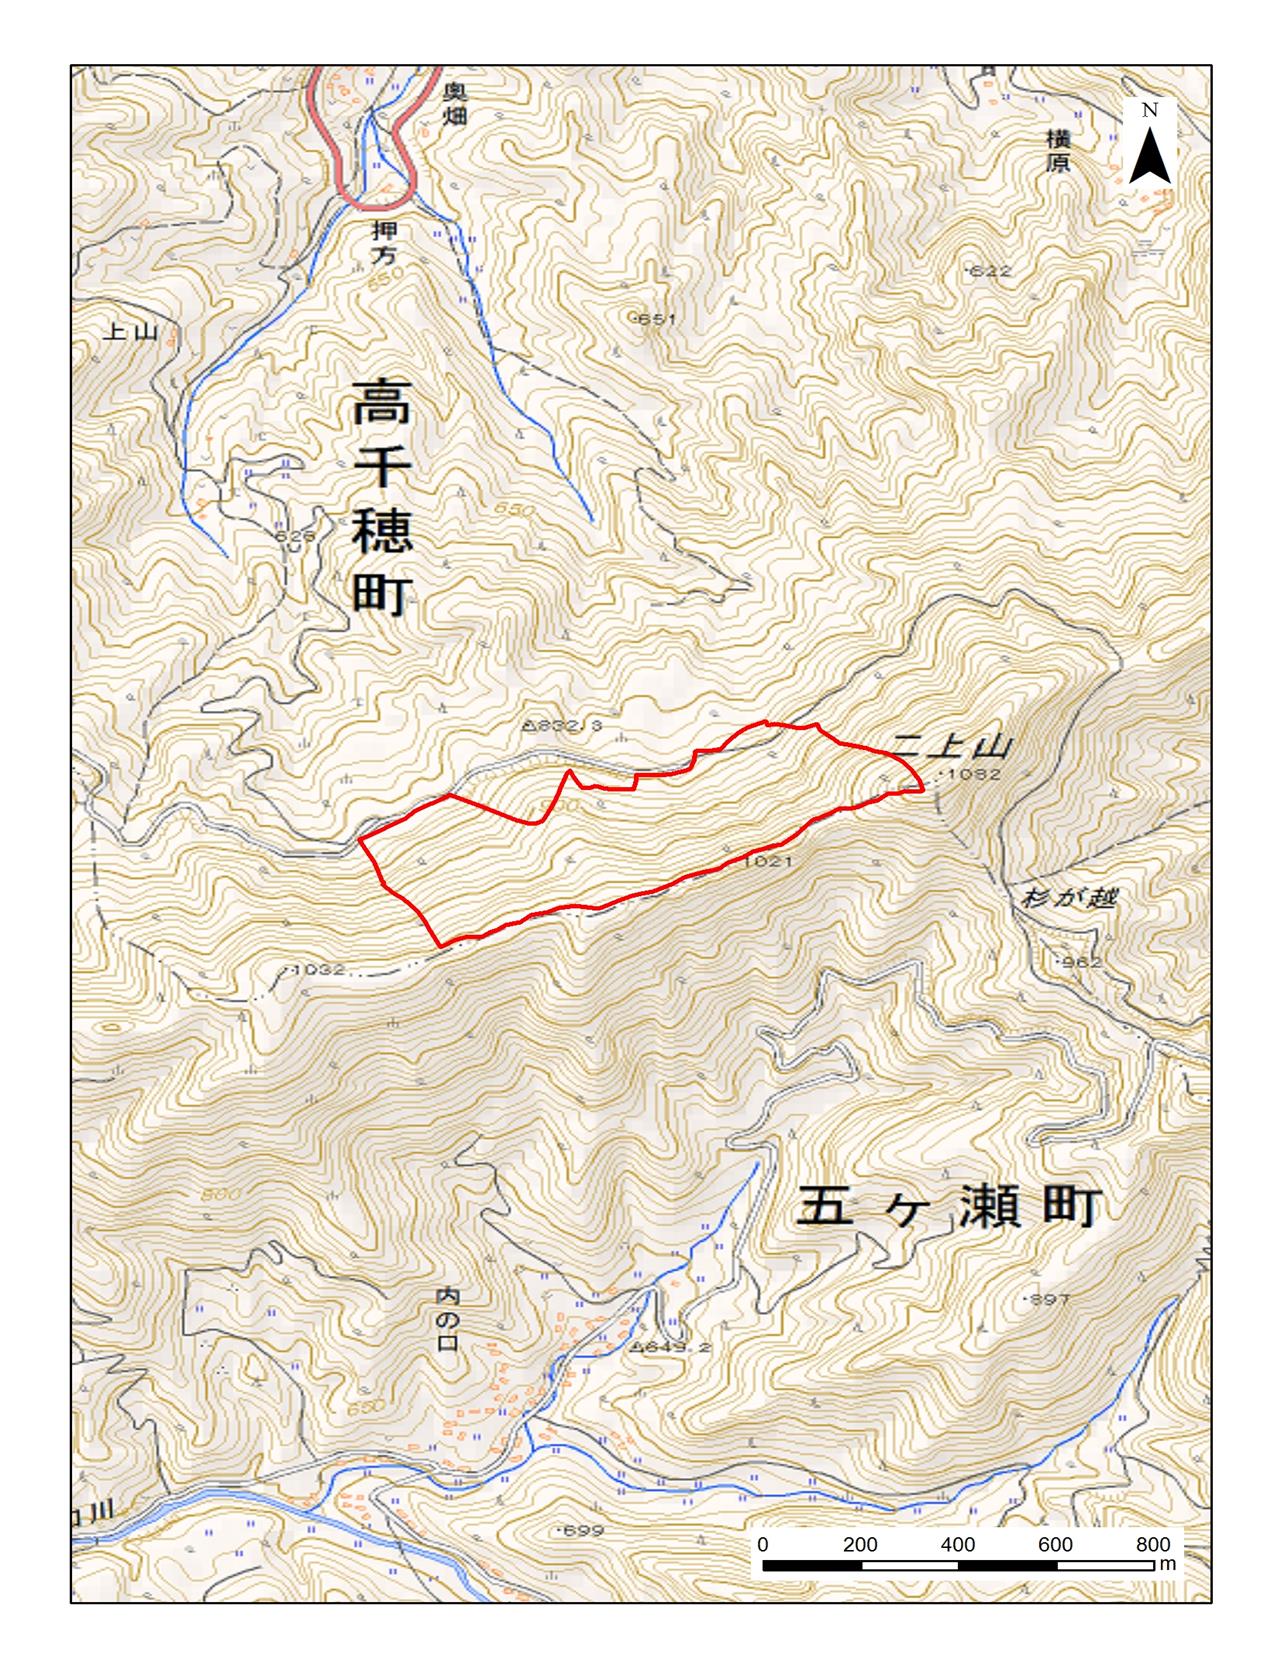 二上ケヤキ希少個体群保護林位置図